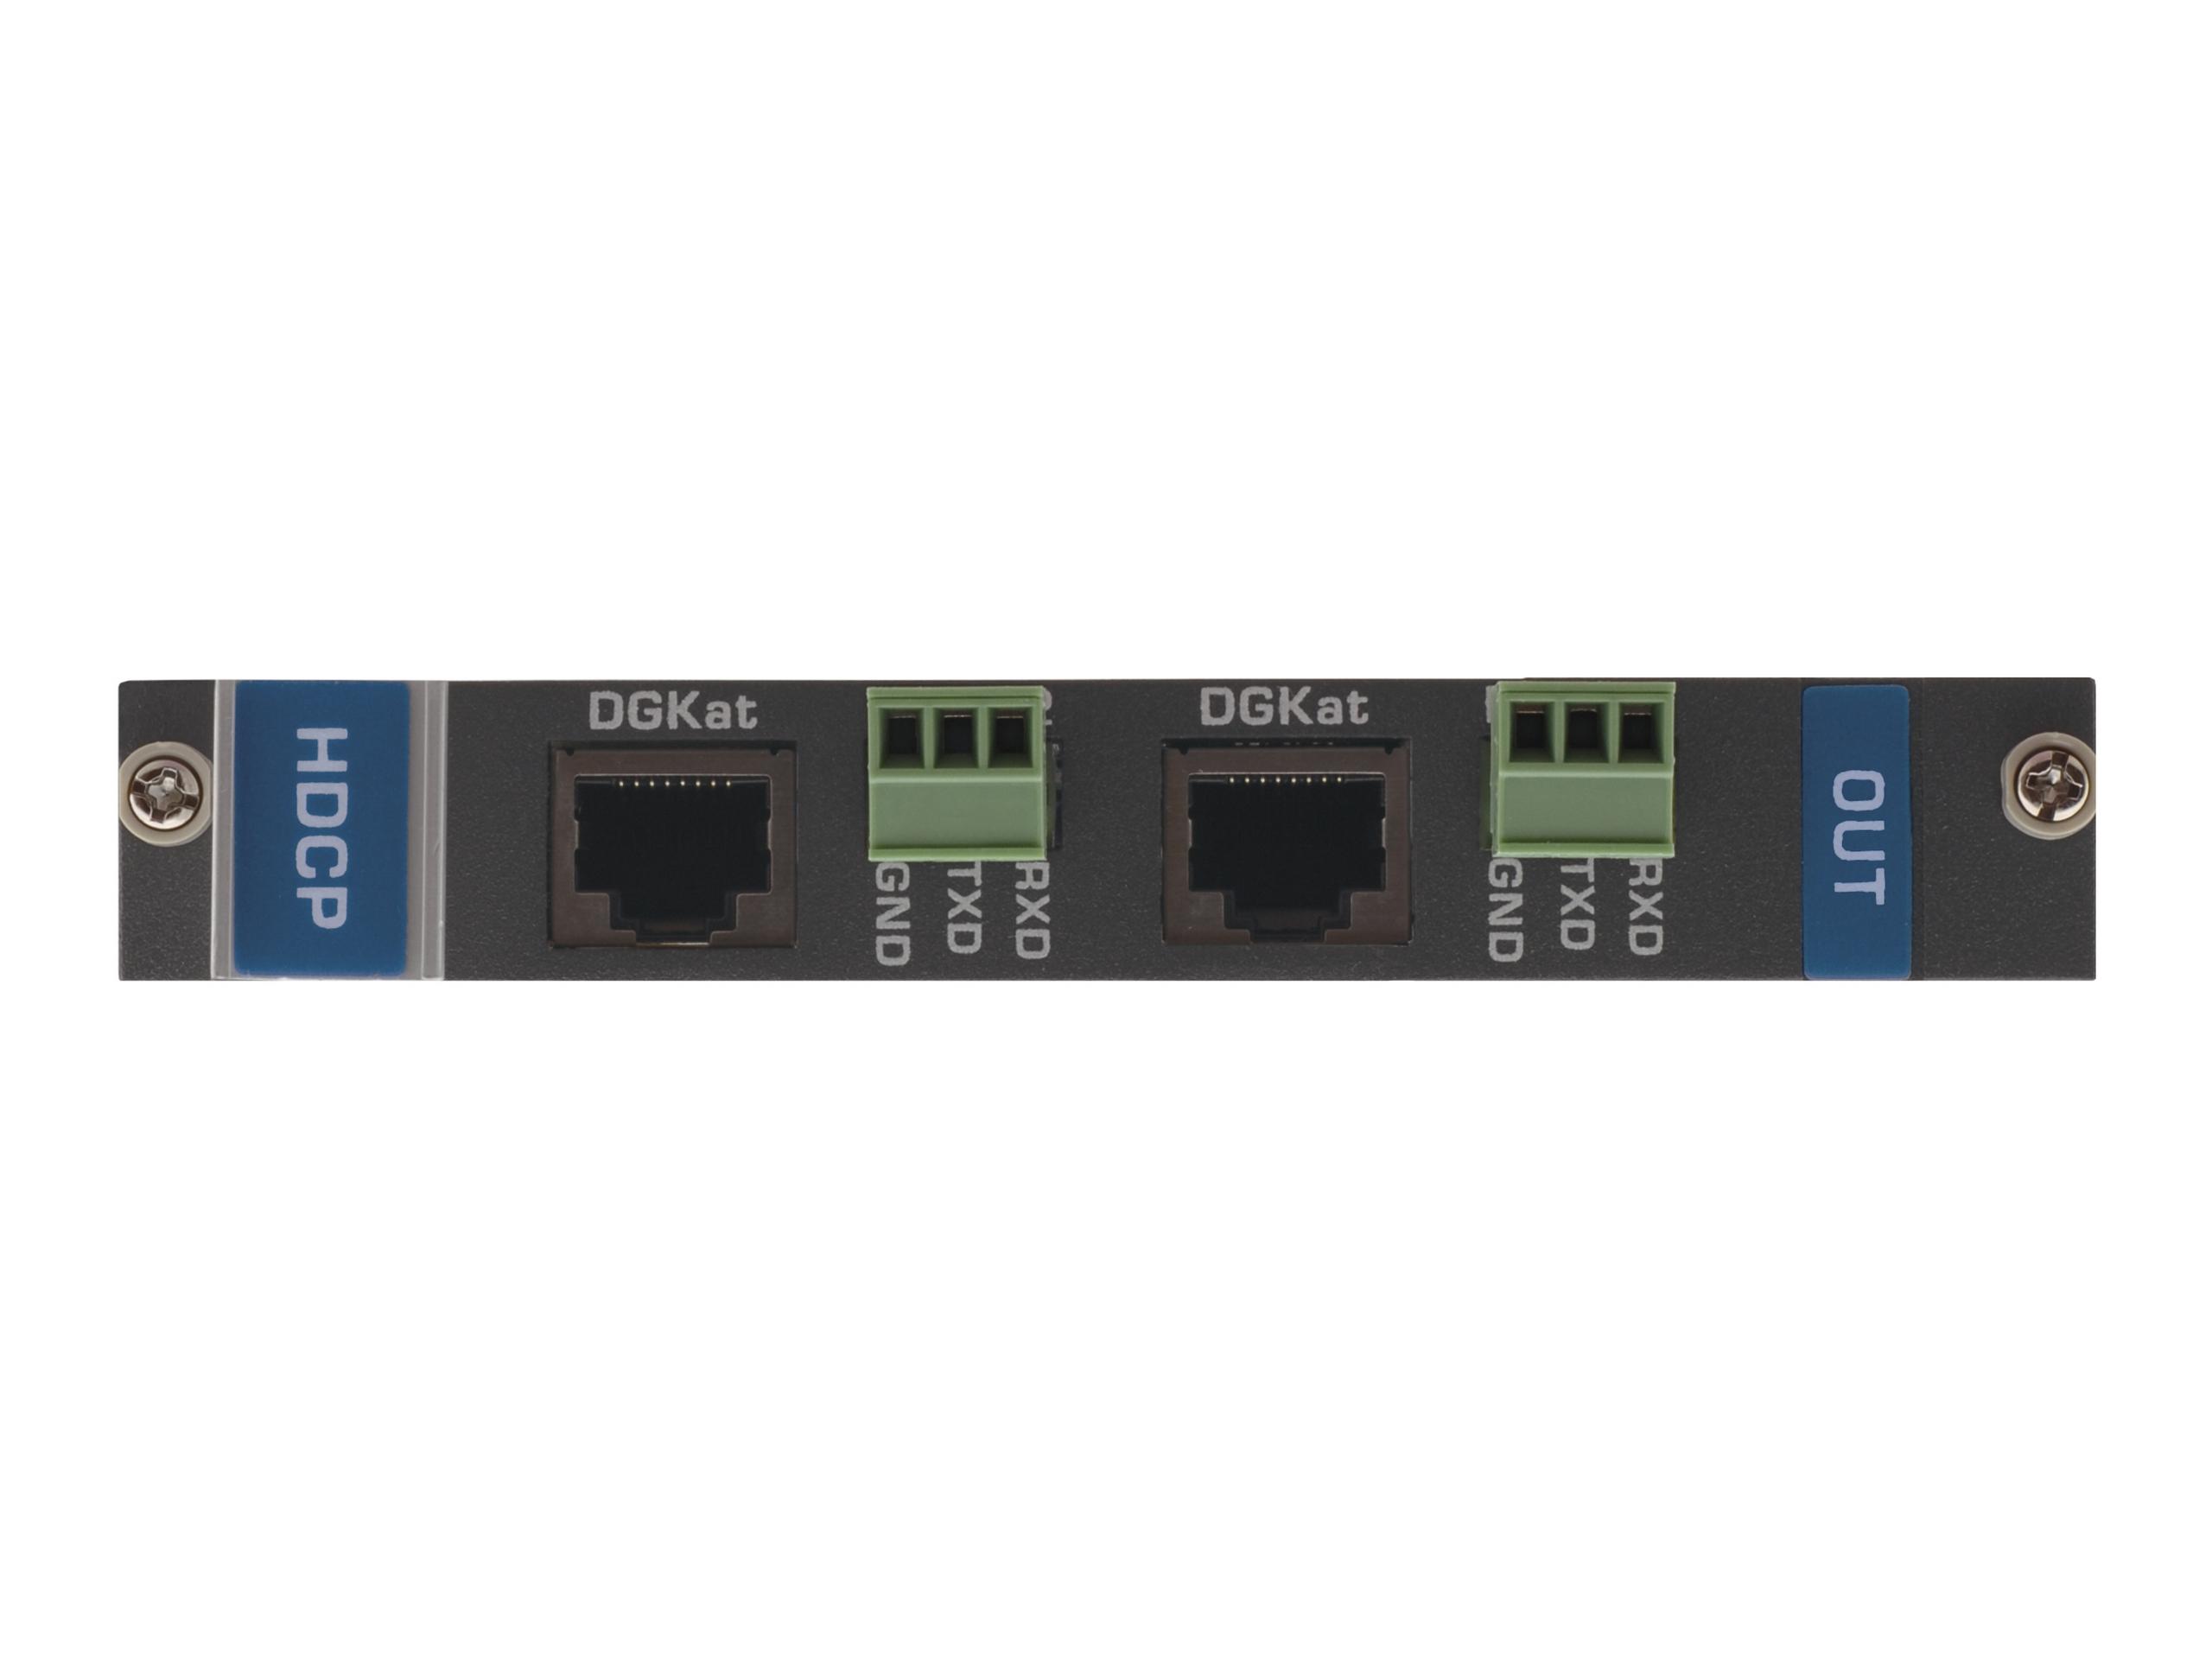 DGKat-OUT2-F16 2-Output HDMI/RS-232 Input over DGKat Card (F-16) by Kramer